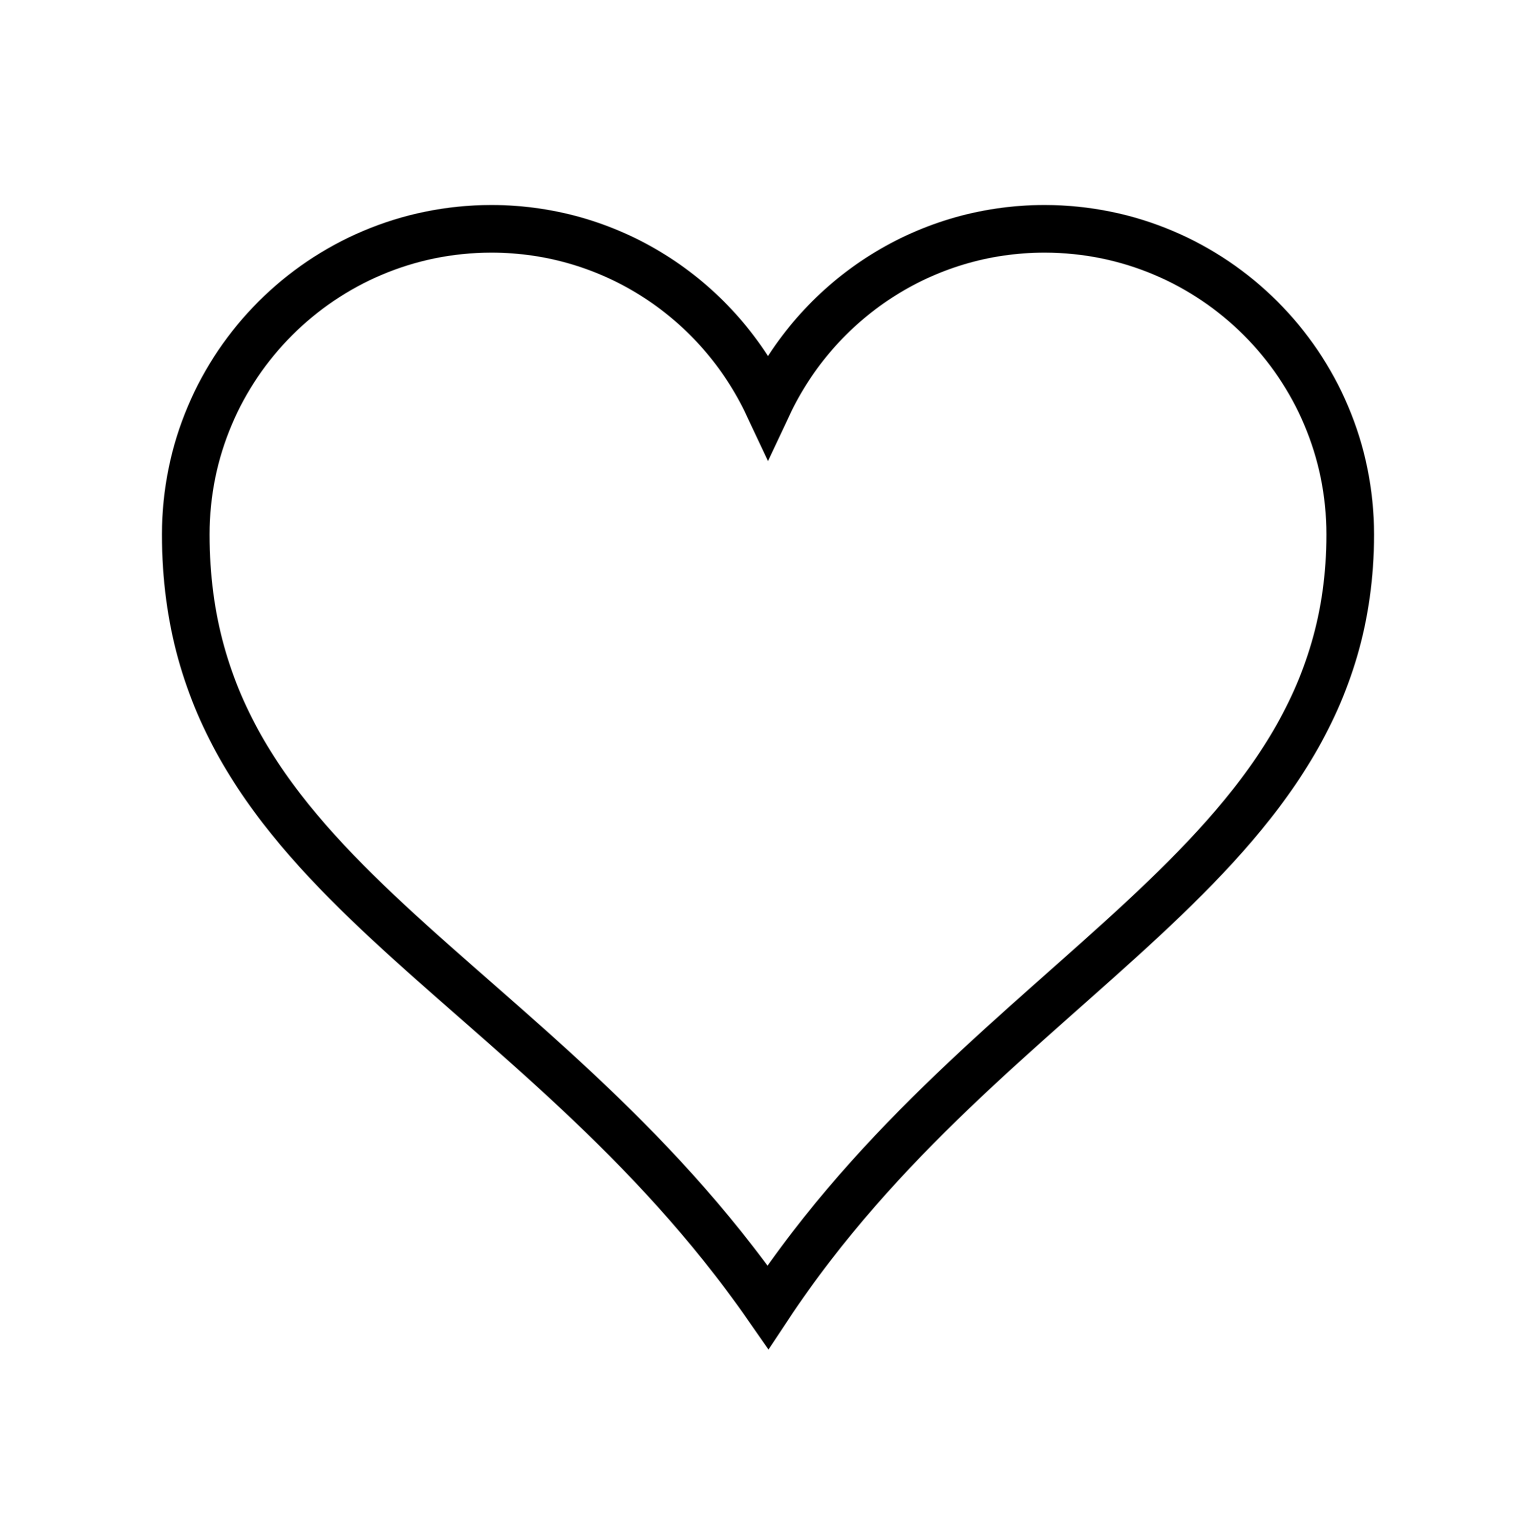 Контур сердца на прозрачном фоне. Символ сердца. Пустое сердце. Сердце контур. Сердце очертание.